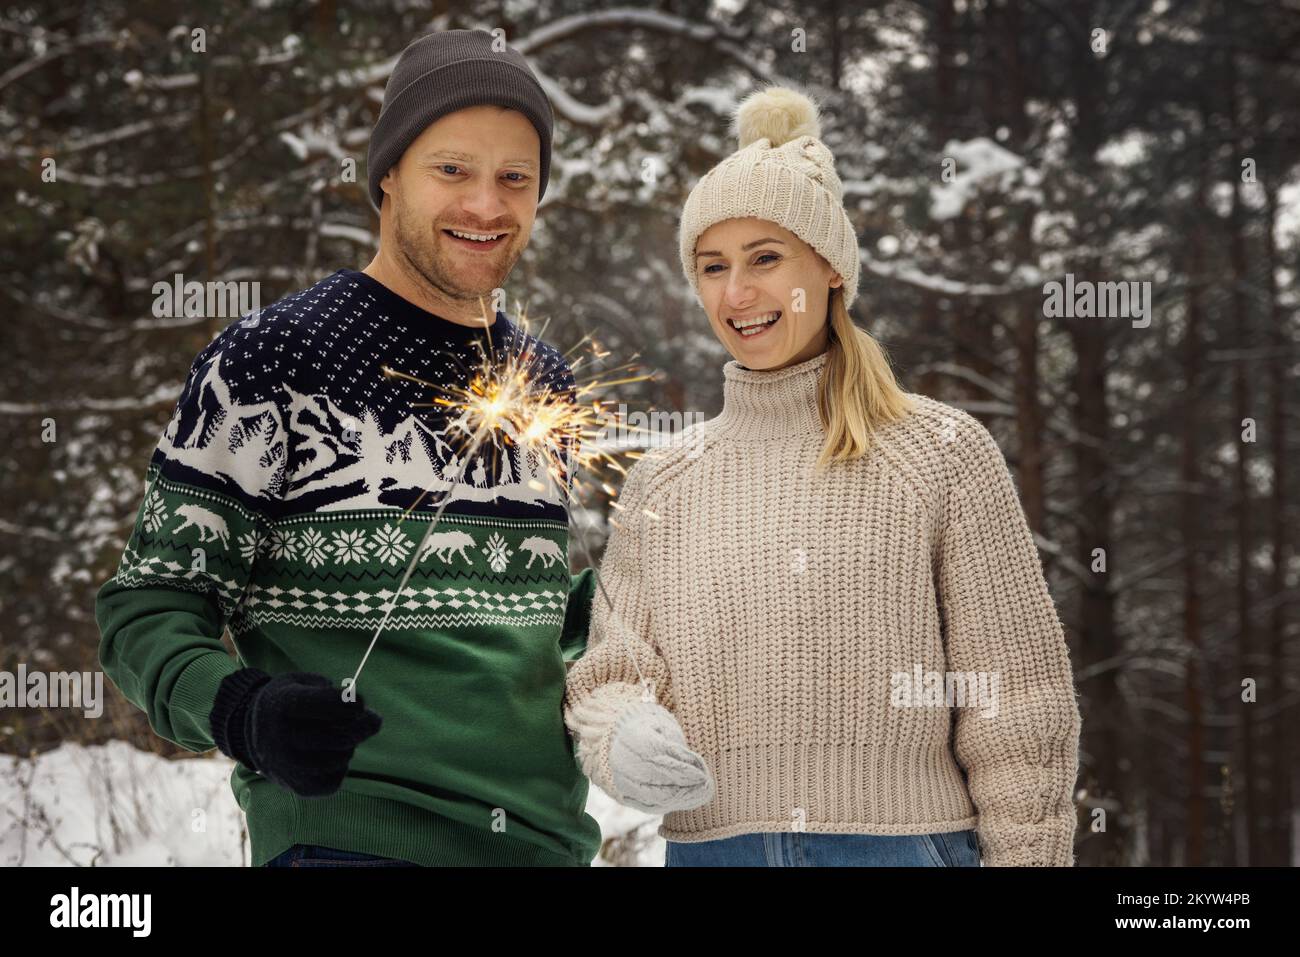 coppia sorridente con scintillanti all'aperto nella foresta invernale innevata. persone con luci bengala brucianti Foto Stock